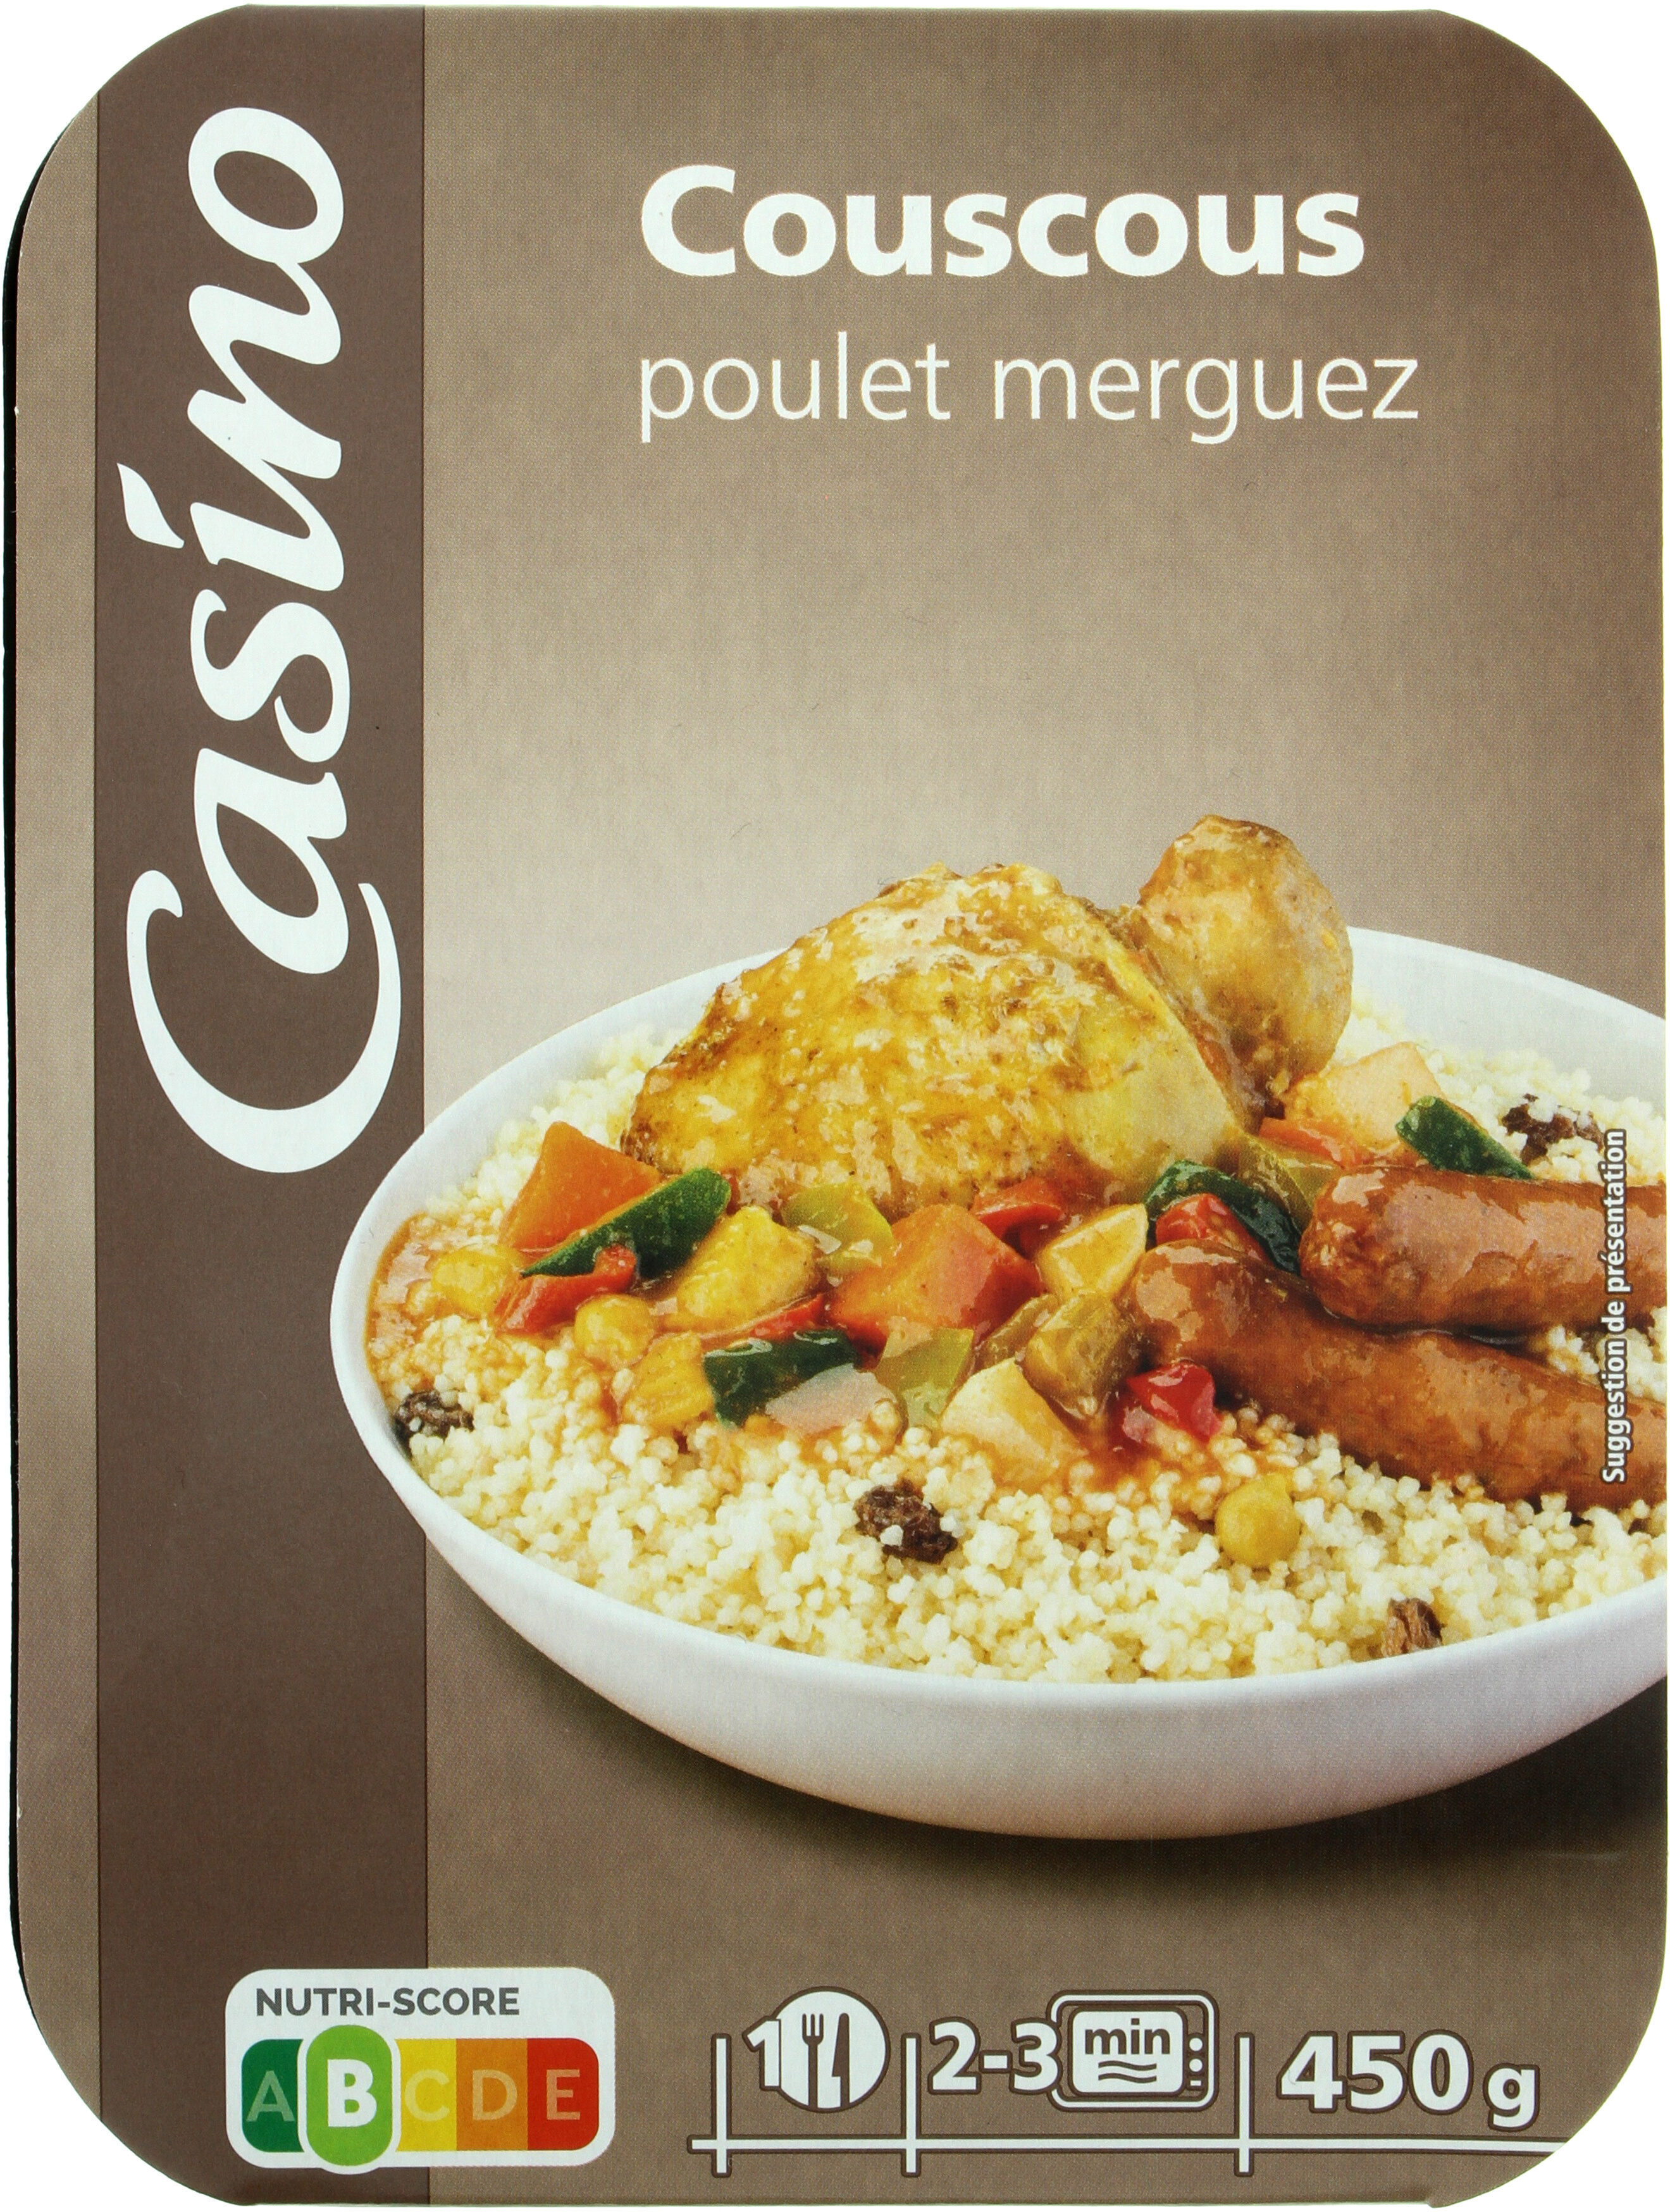 Couscous poulet merguez - Product - fr